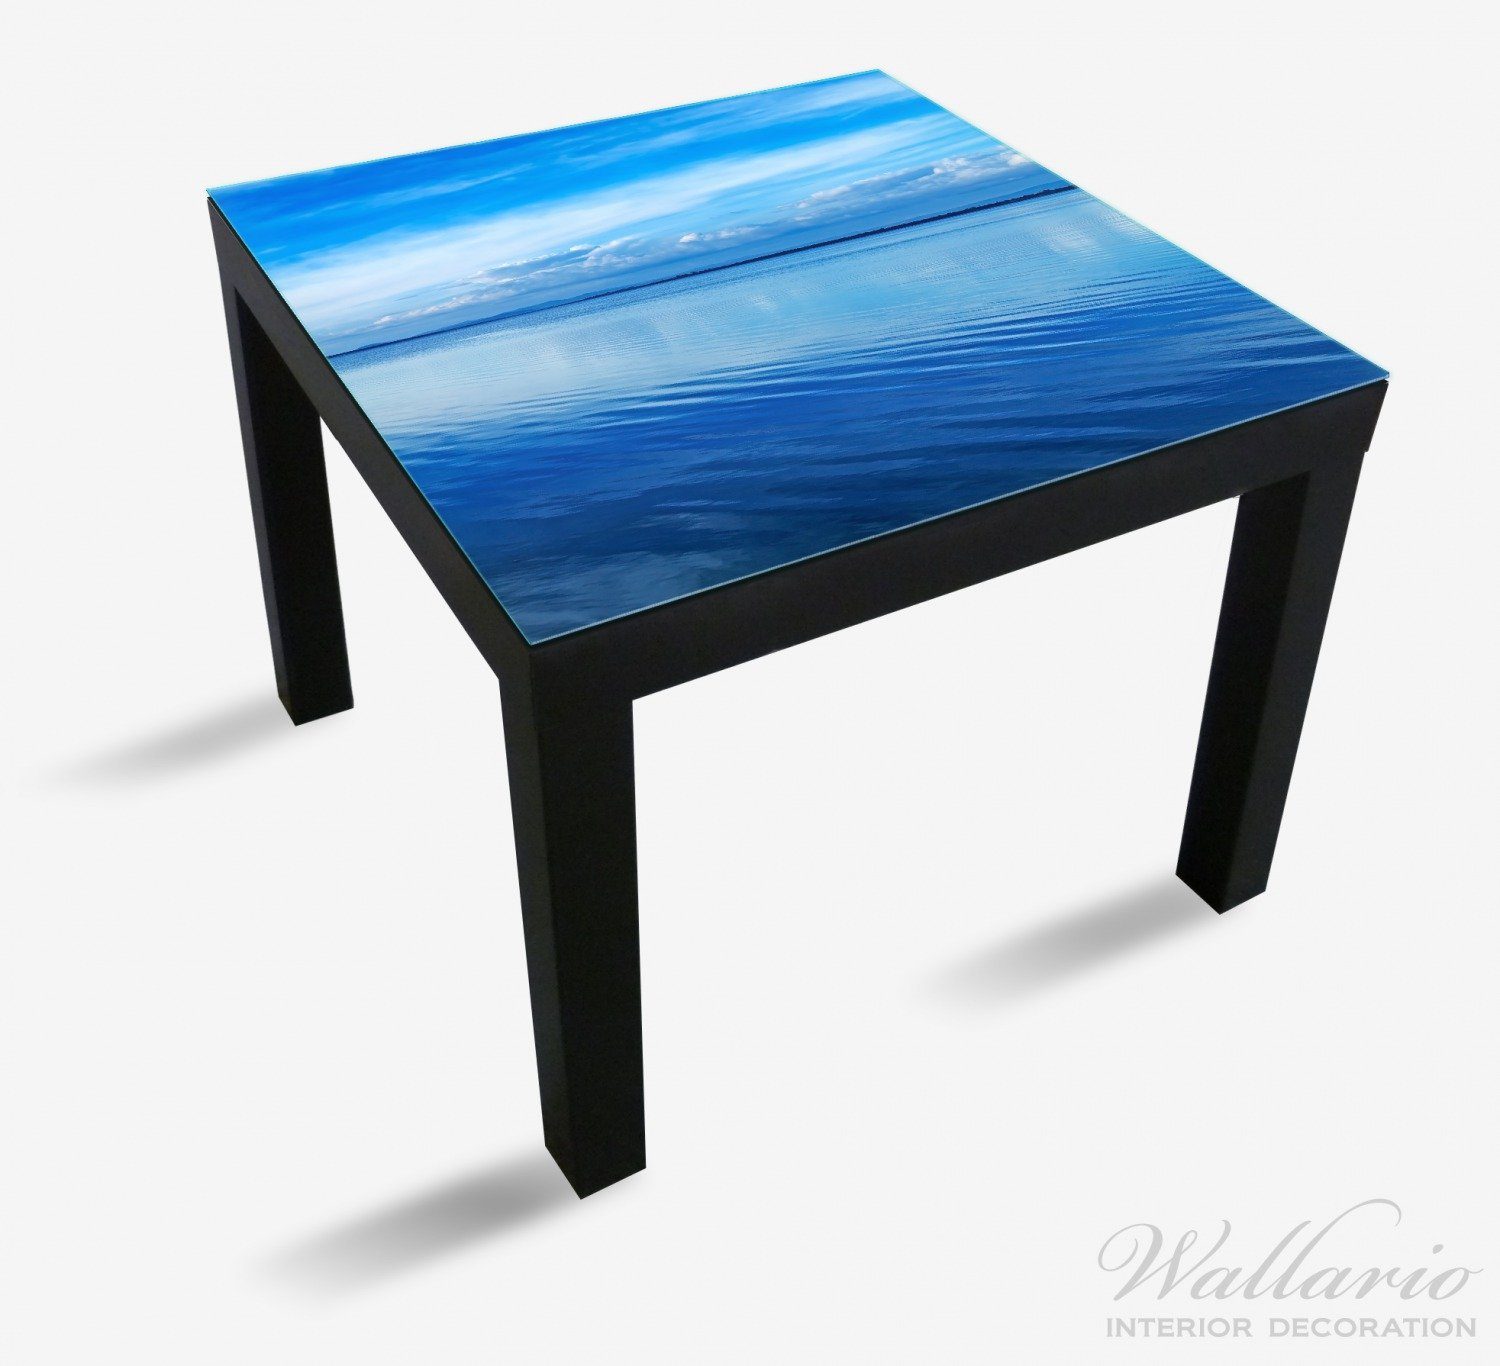 für im Spiegelung St), Lack (1 Tisch Tischplatte in Ikea Italien Wallario mit Wasser geeignet Meeresbucht Blaue